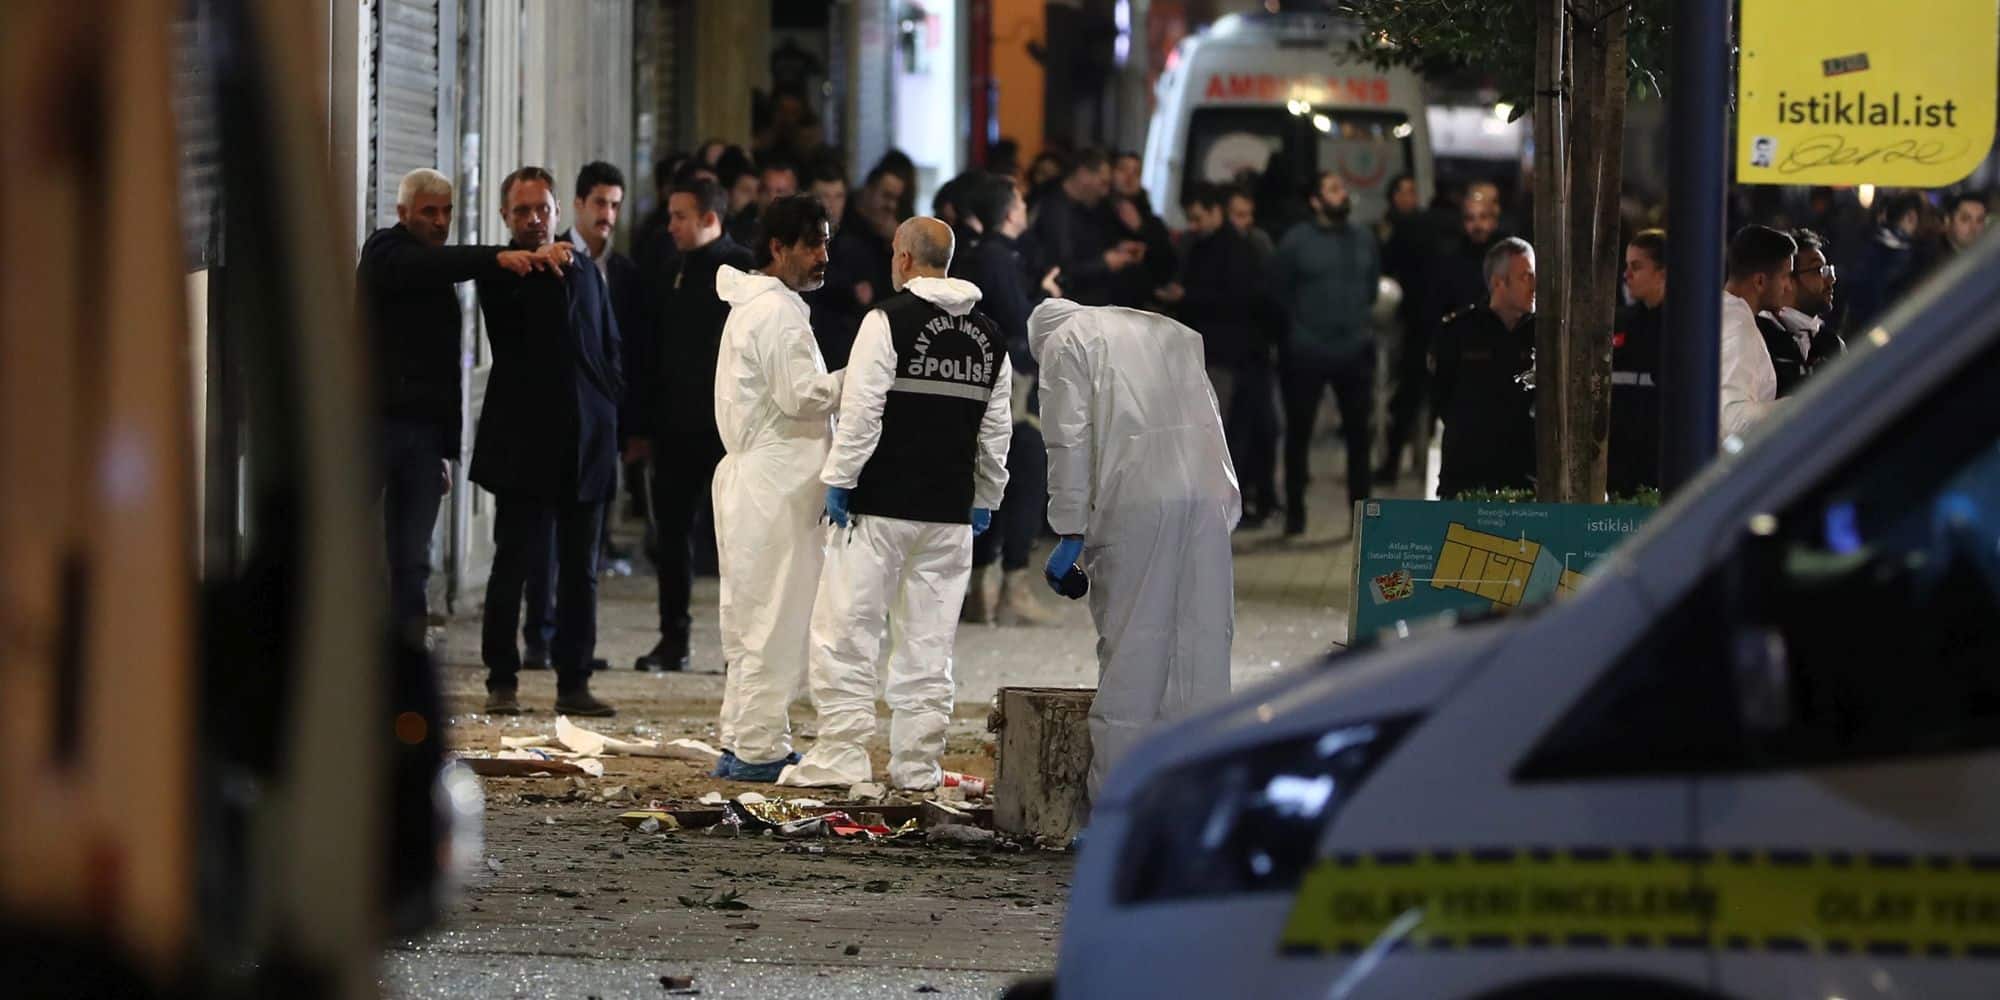 Η έκρηξη στην Τουρκία που κόστισε τη ζωή σε 6 άτομα